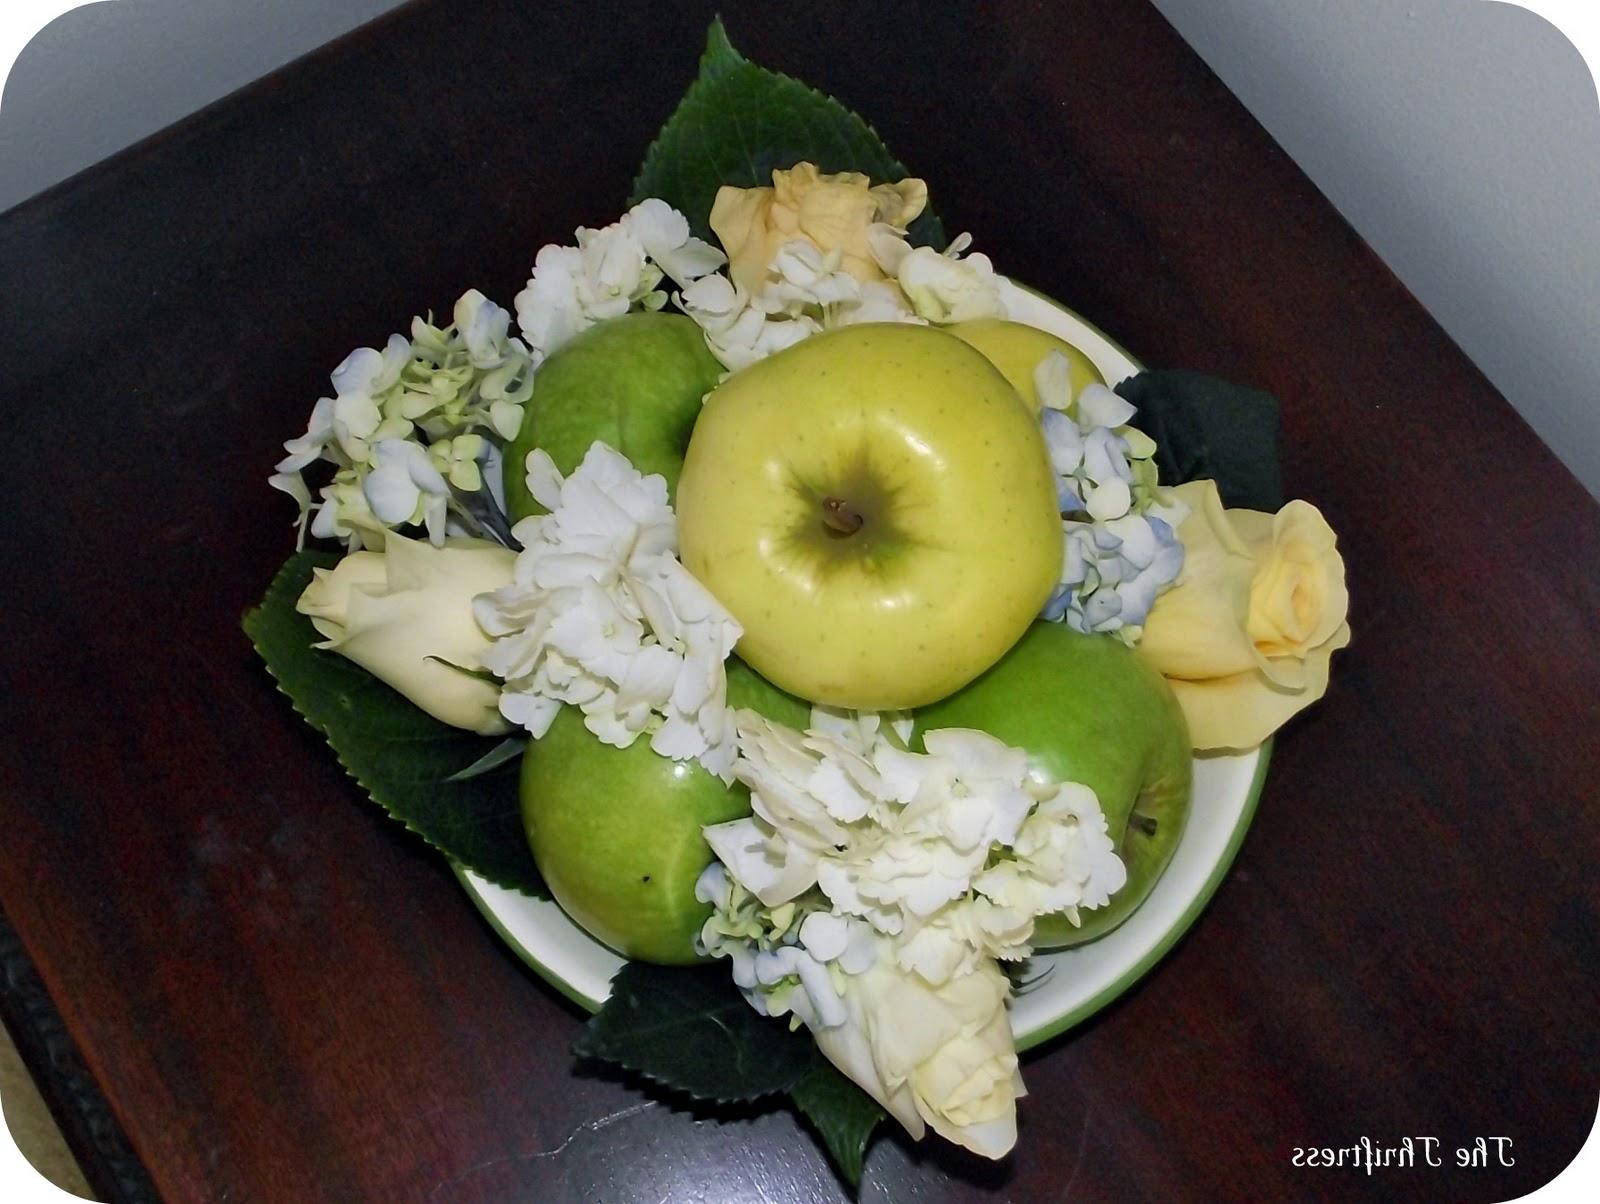 Using fruit in the arrangement